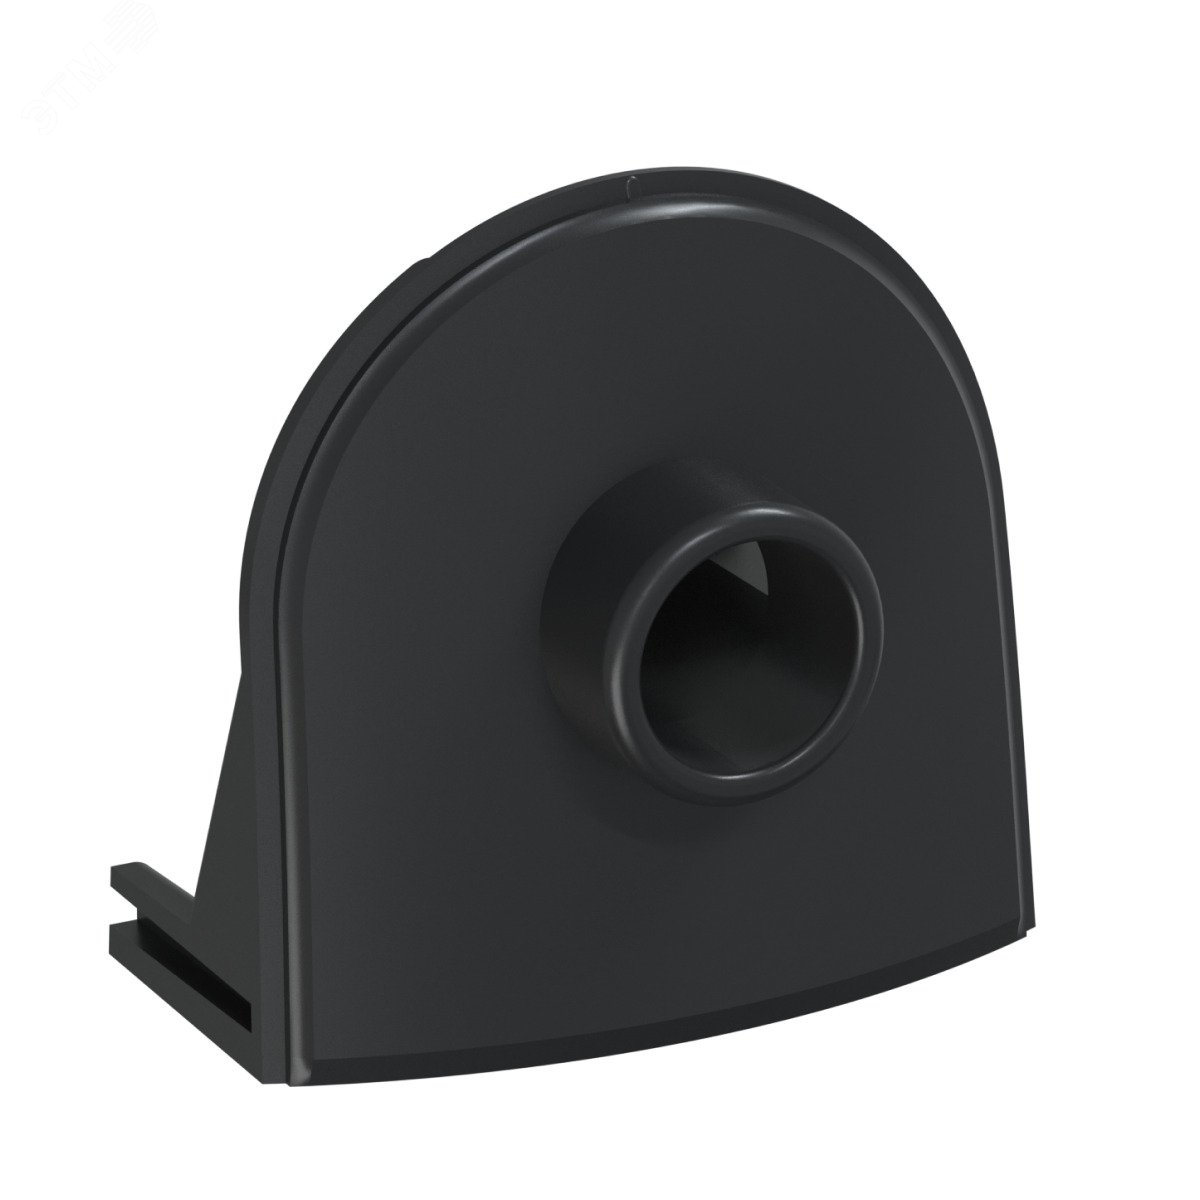 Ввод в распред. коробку для ретро-провода Rotondo, цвет черный (в упаковке 4шт) 7700930 OneKeyElectro